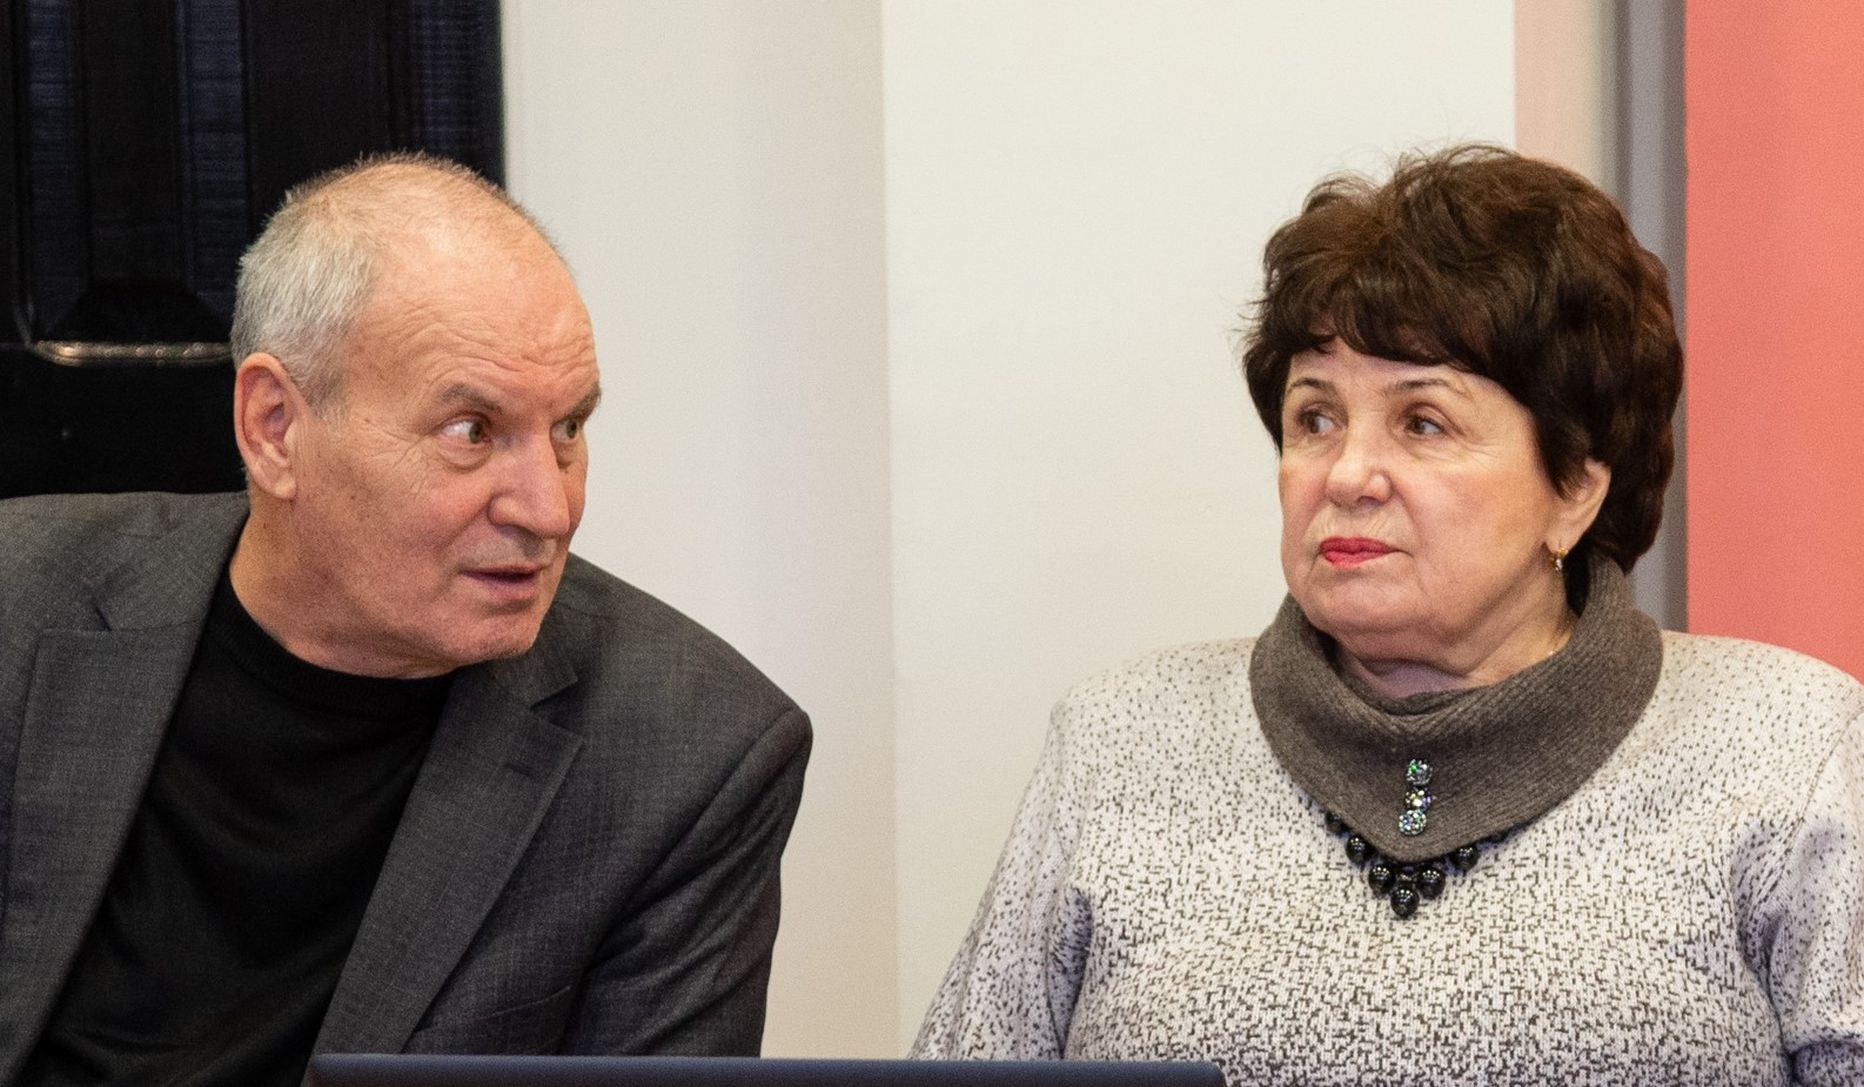 Владимир Эвве и Анна Рентик, которые на протяжении многих лет представляли Центристскую партию в горсобрании, теперь являются членами фракции избирательного союза "Restart Kohtla-Järve".